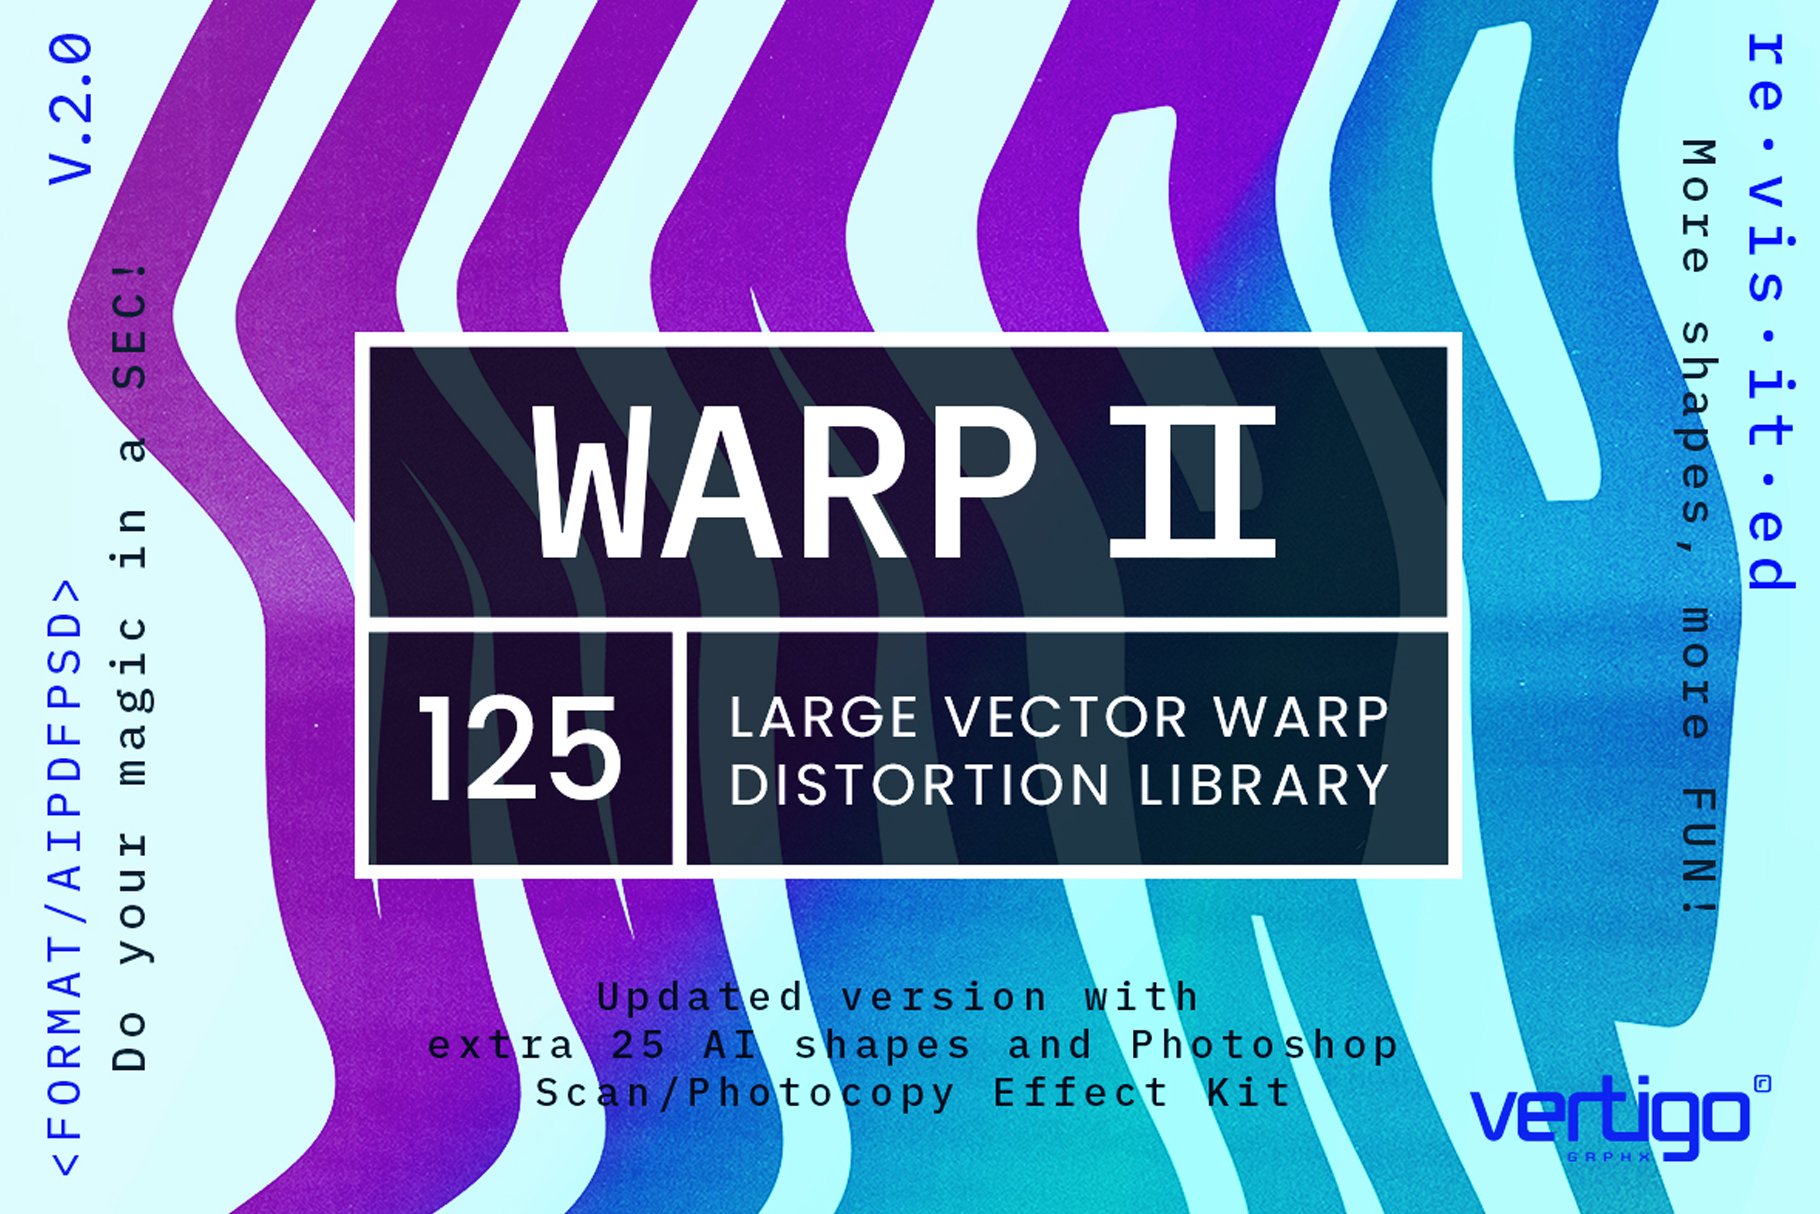 WARP V.2.0cover image.